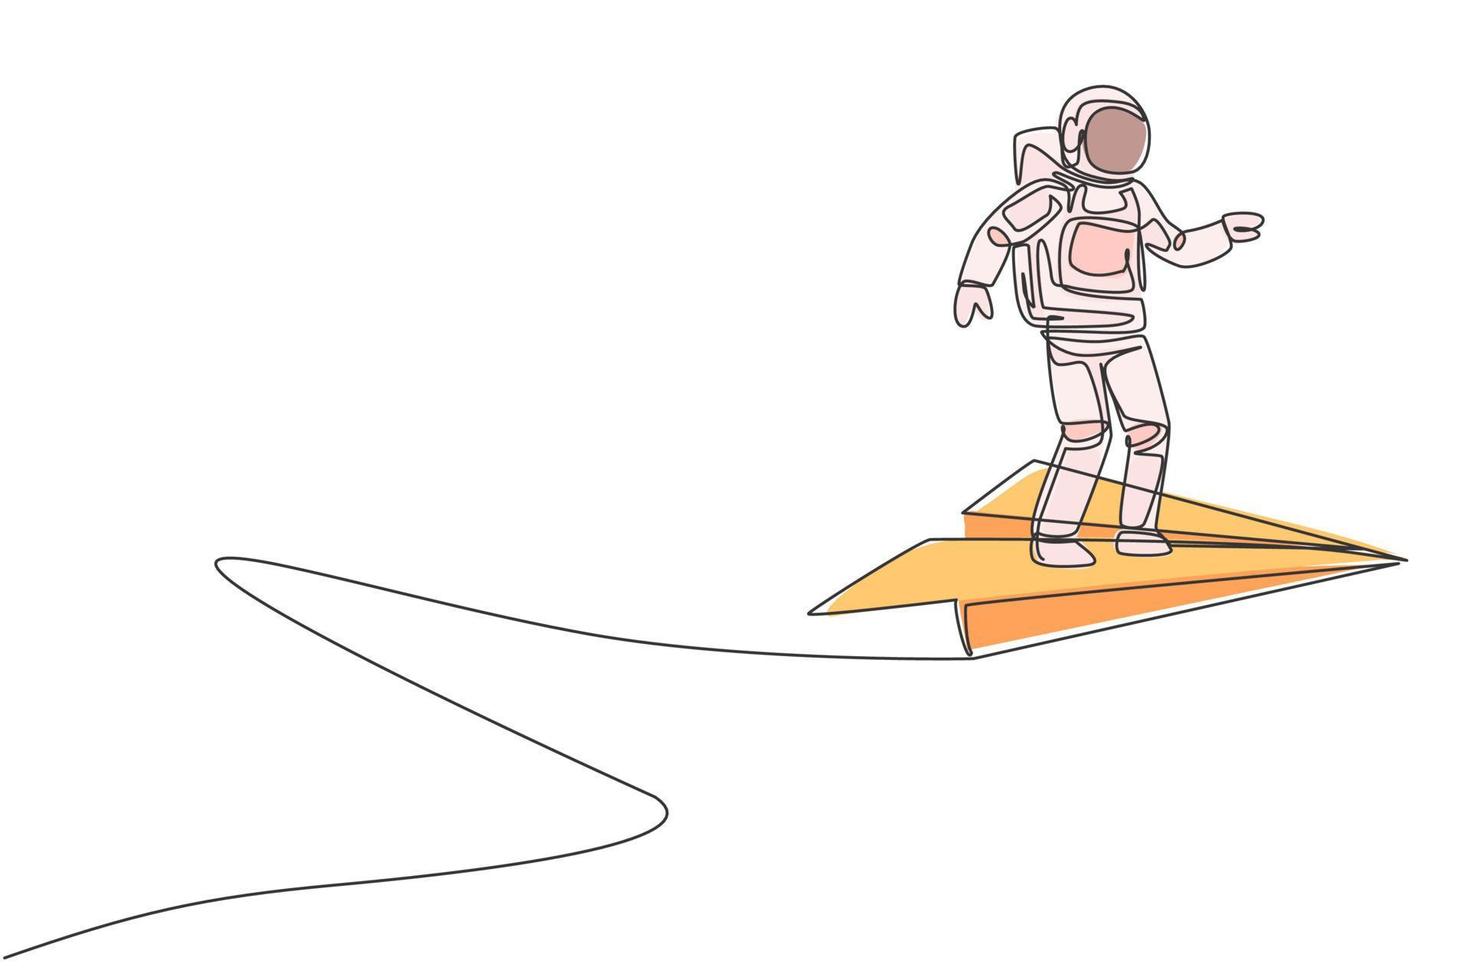 enkele doorlopende lijntekening van een jonge astronaut die stil staat op een vliegend papieren vliegtuigje aan de hemel. kosmonaut ruimteconcept. trendy één lijn tekenen grafisch ontwerp vectorillustratie vector